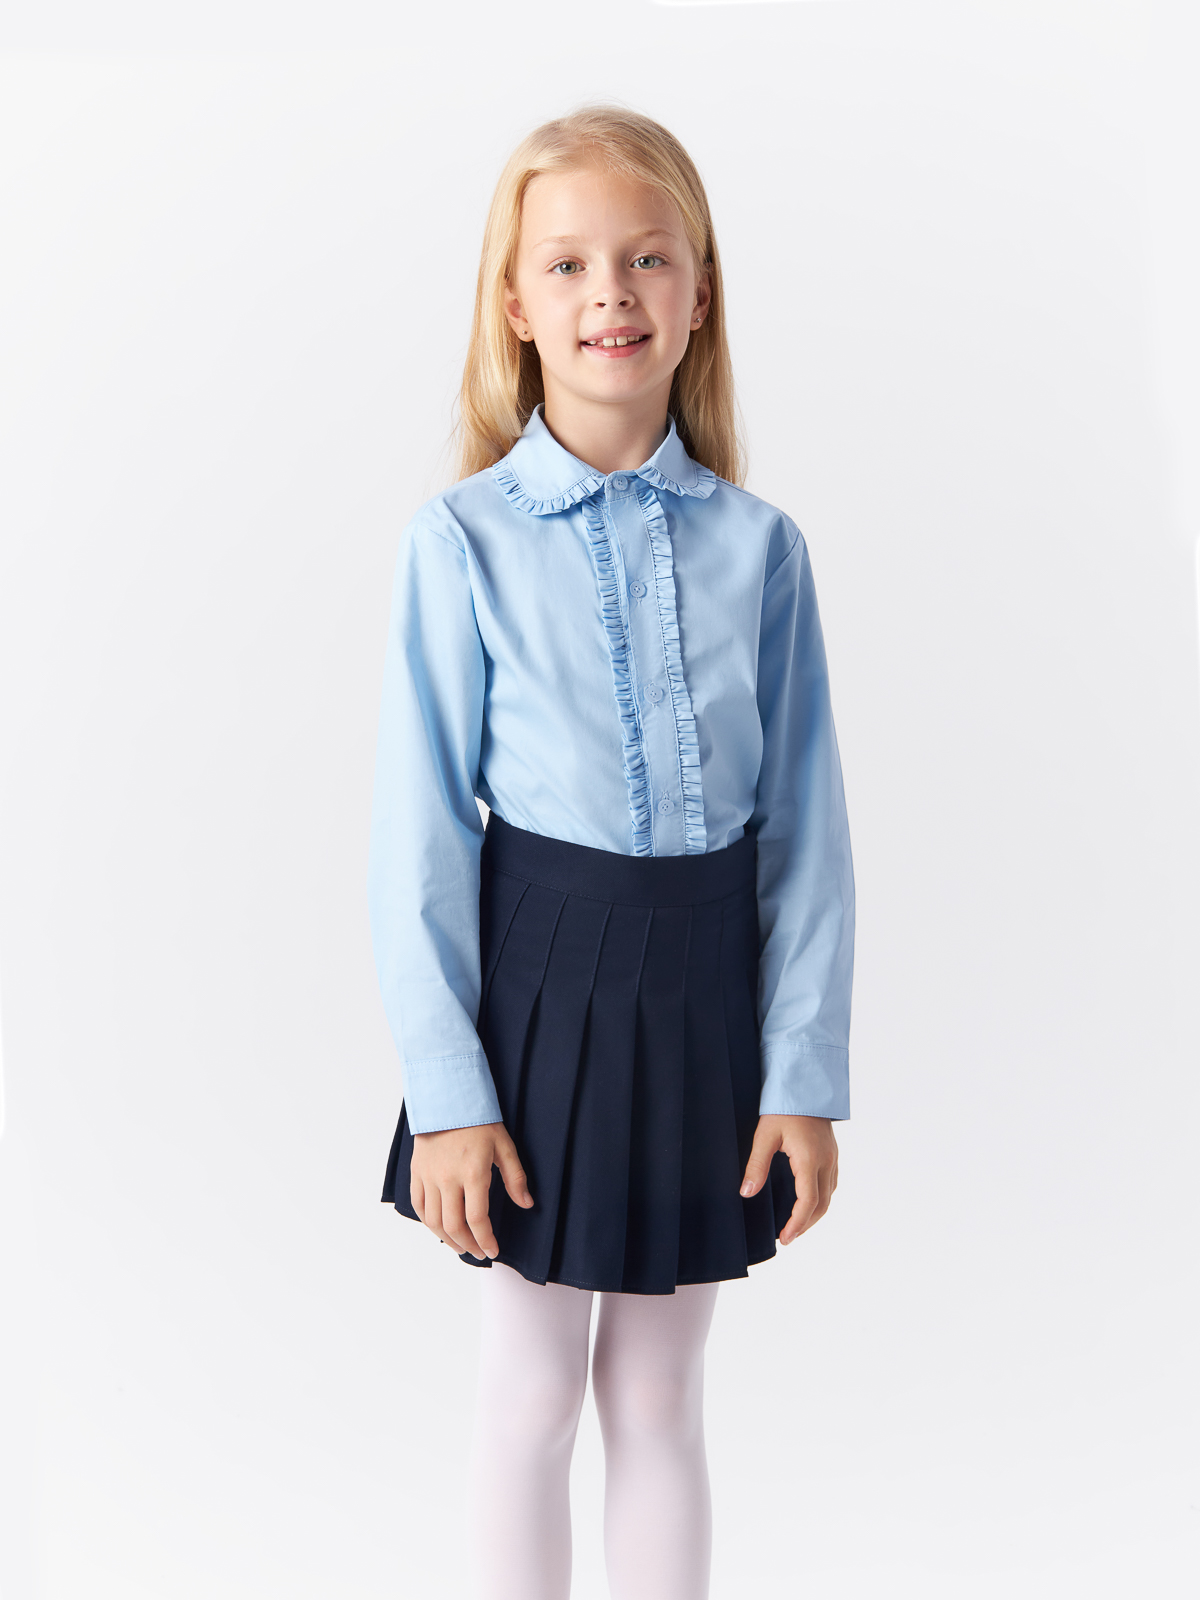 Блузка Yiwu Xflot Supply Chain детская, BS-2blue, размер 160 см блузка трикотажная школьная белая button blue 146